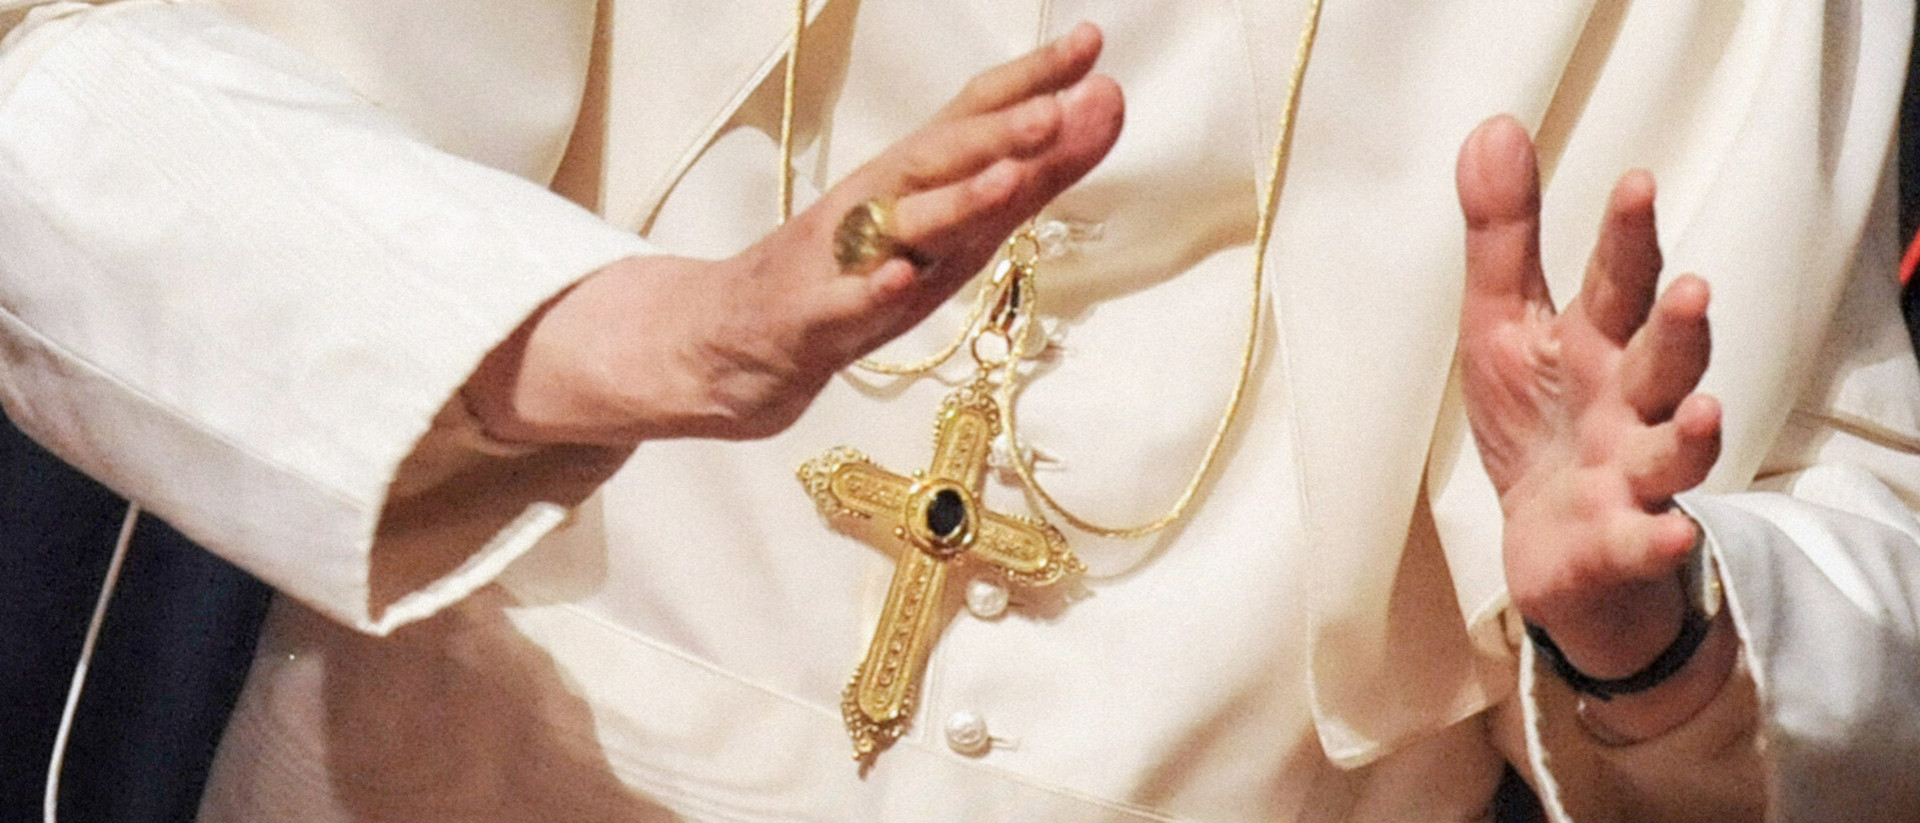 Das gestohlene Kreuz vom ehemaligen Papst Benedikt XVI.